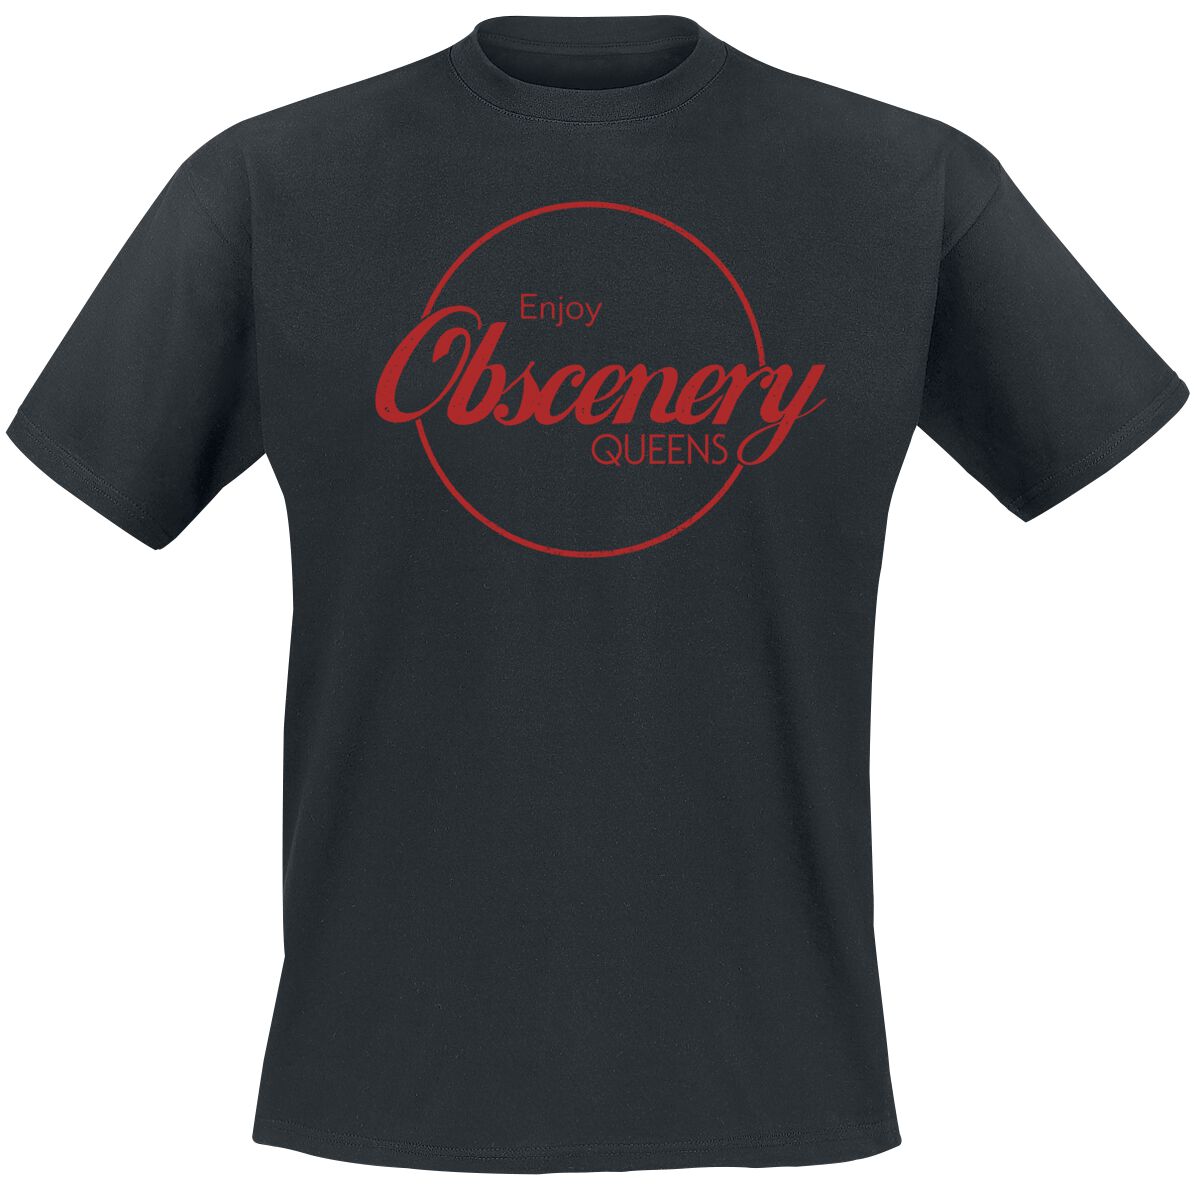 Queens Of The Stone Age T-Shirt - Enjoy Obscenery - S bis XXL - für Männer - Größe XXL - schwarz  - Lizenziertes Merchandise!